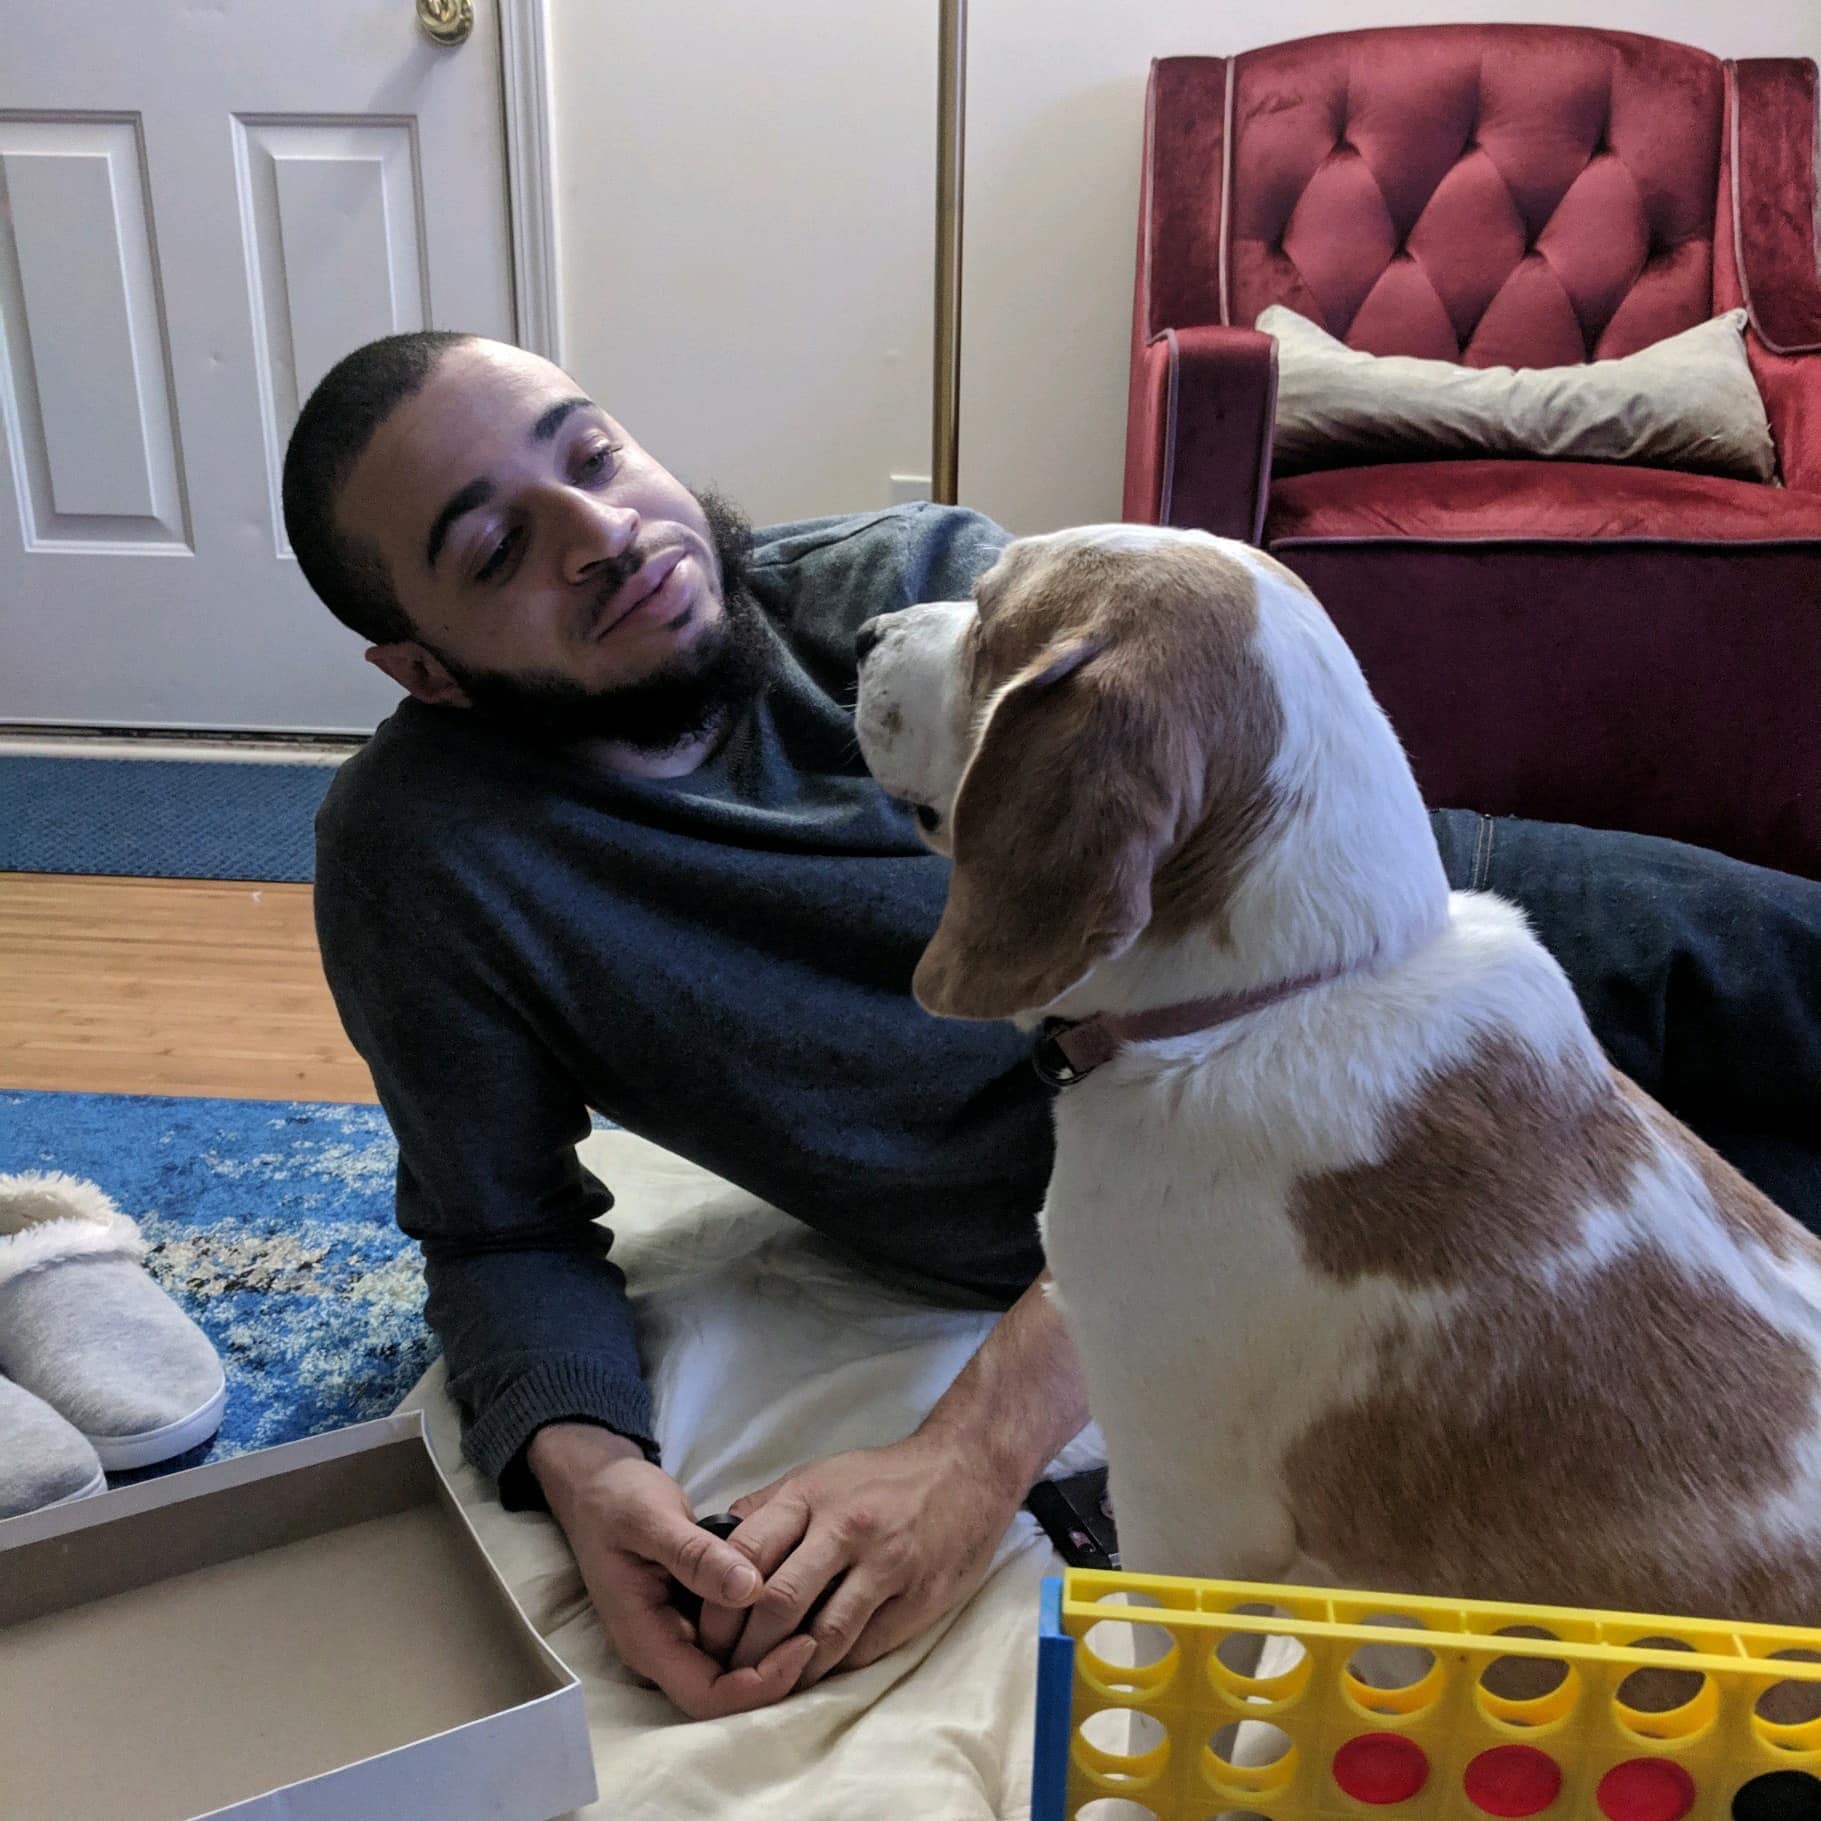 Jordan with his dog